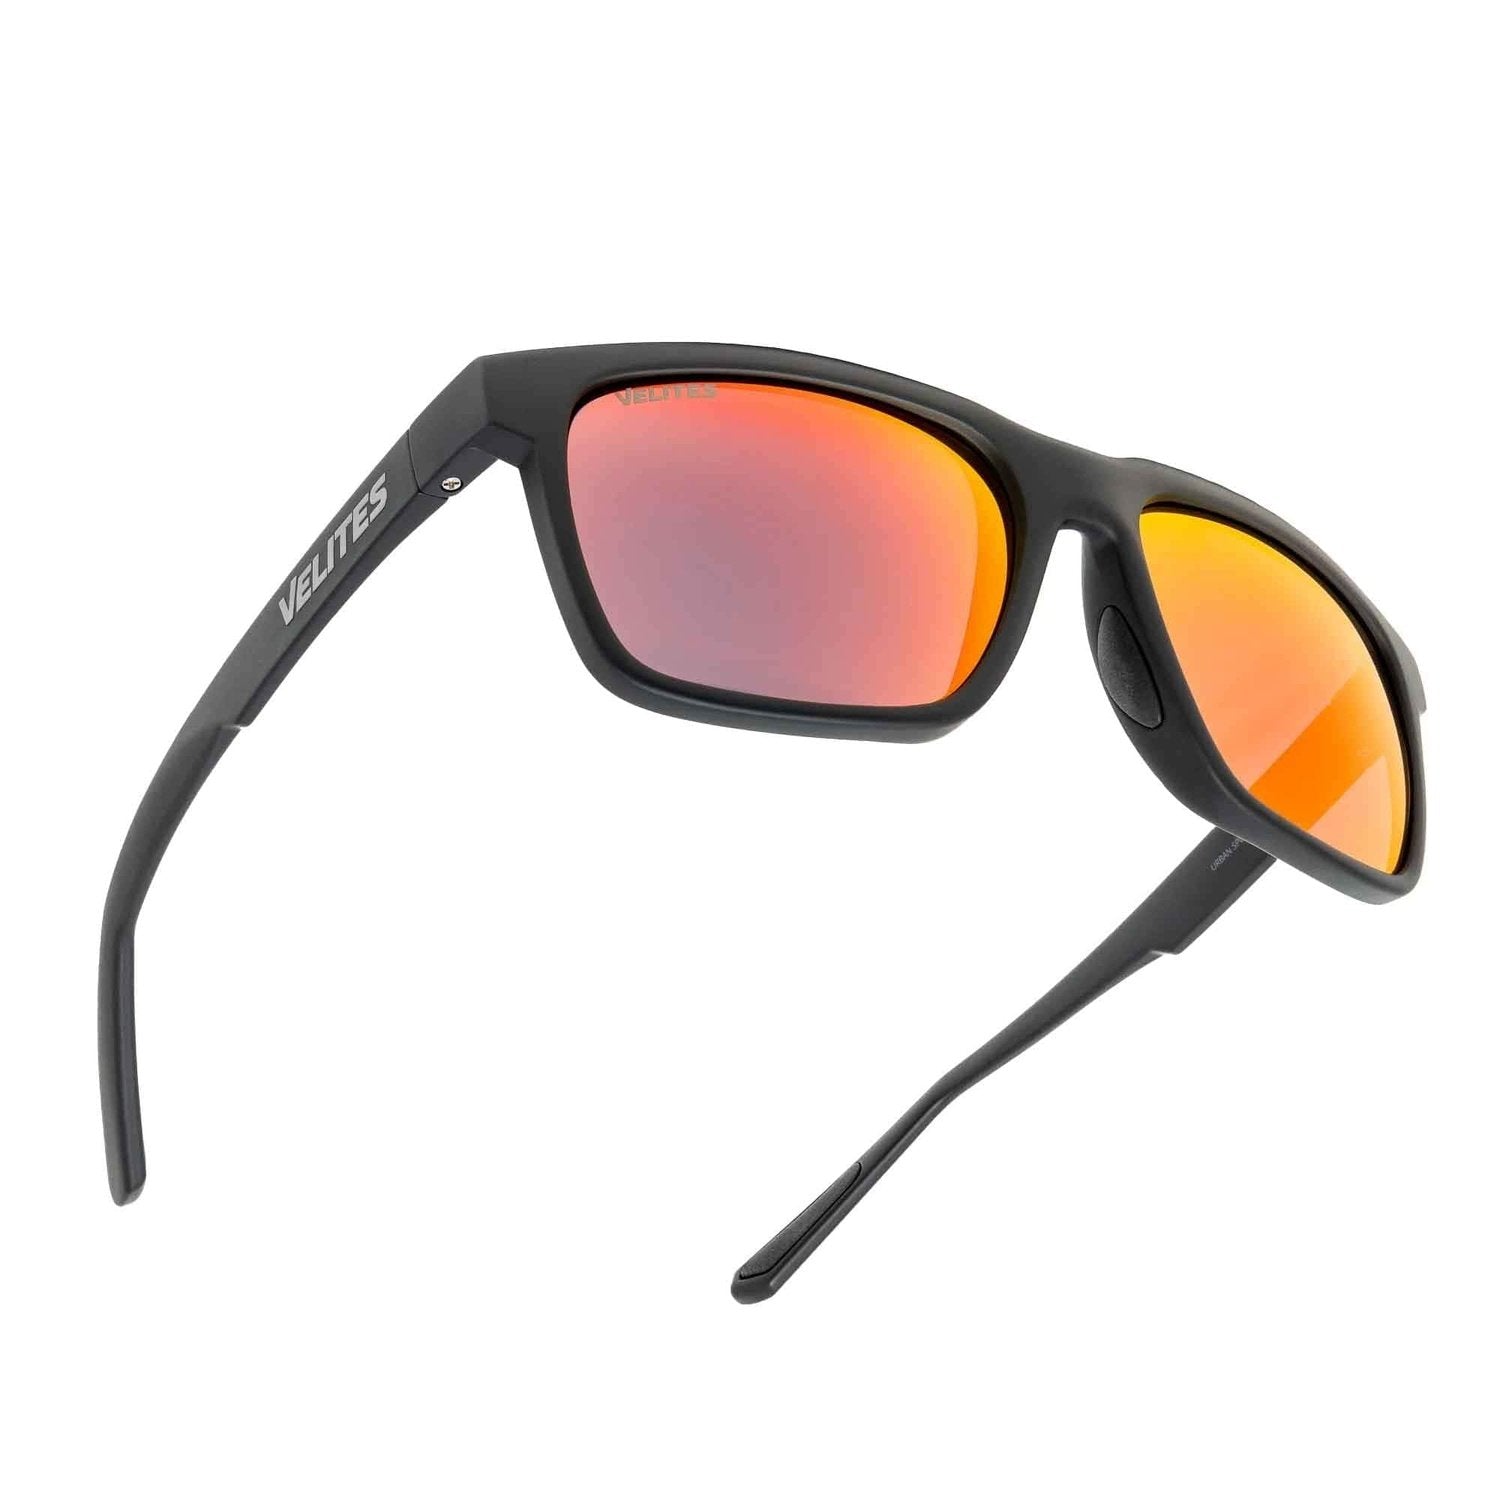 Velites Sonnenbrille "Urban Sport" Schwarz/Orange kaufen bei HighPowered.ch